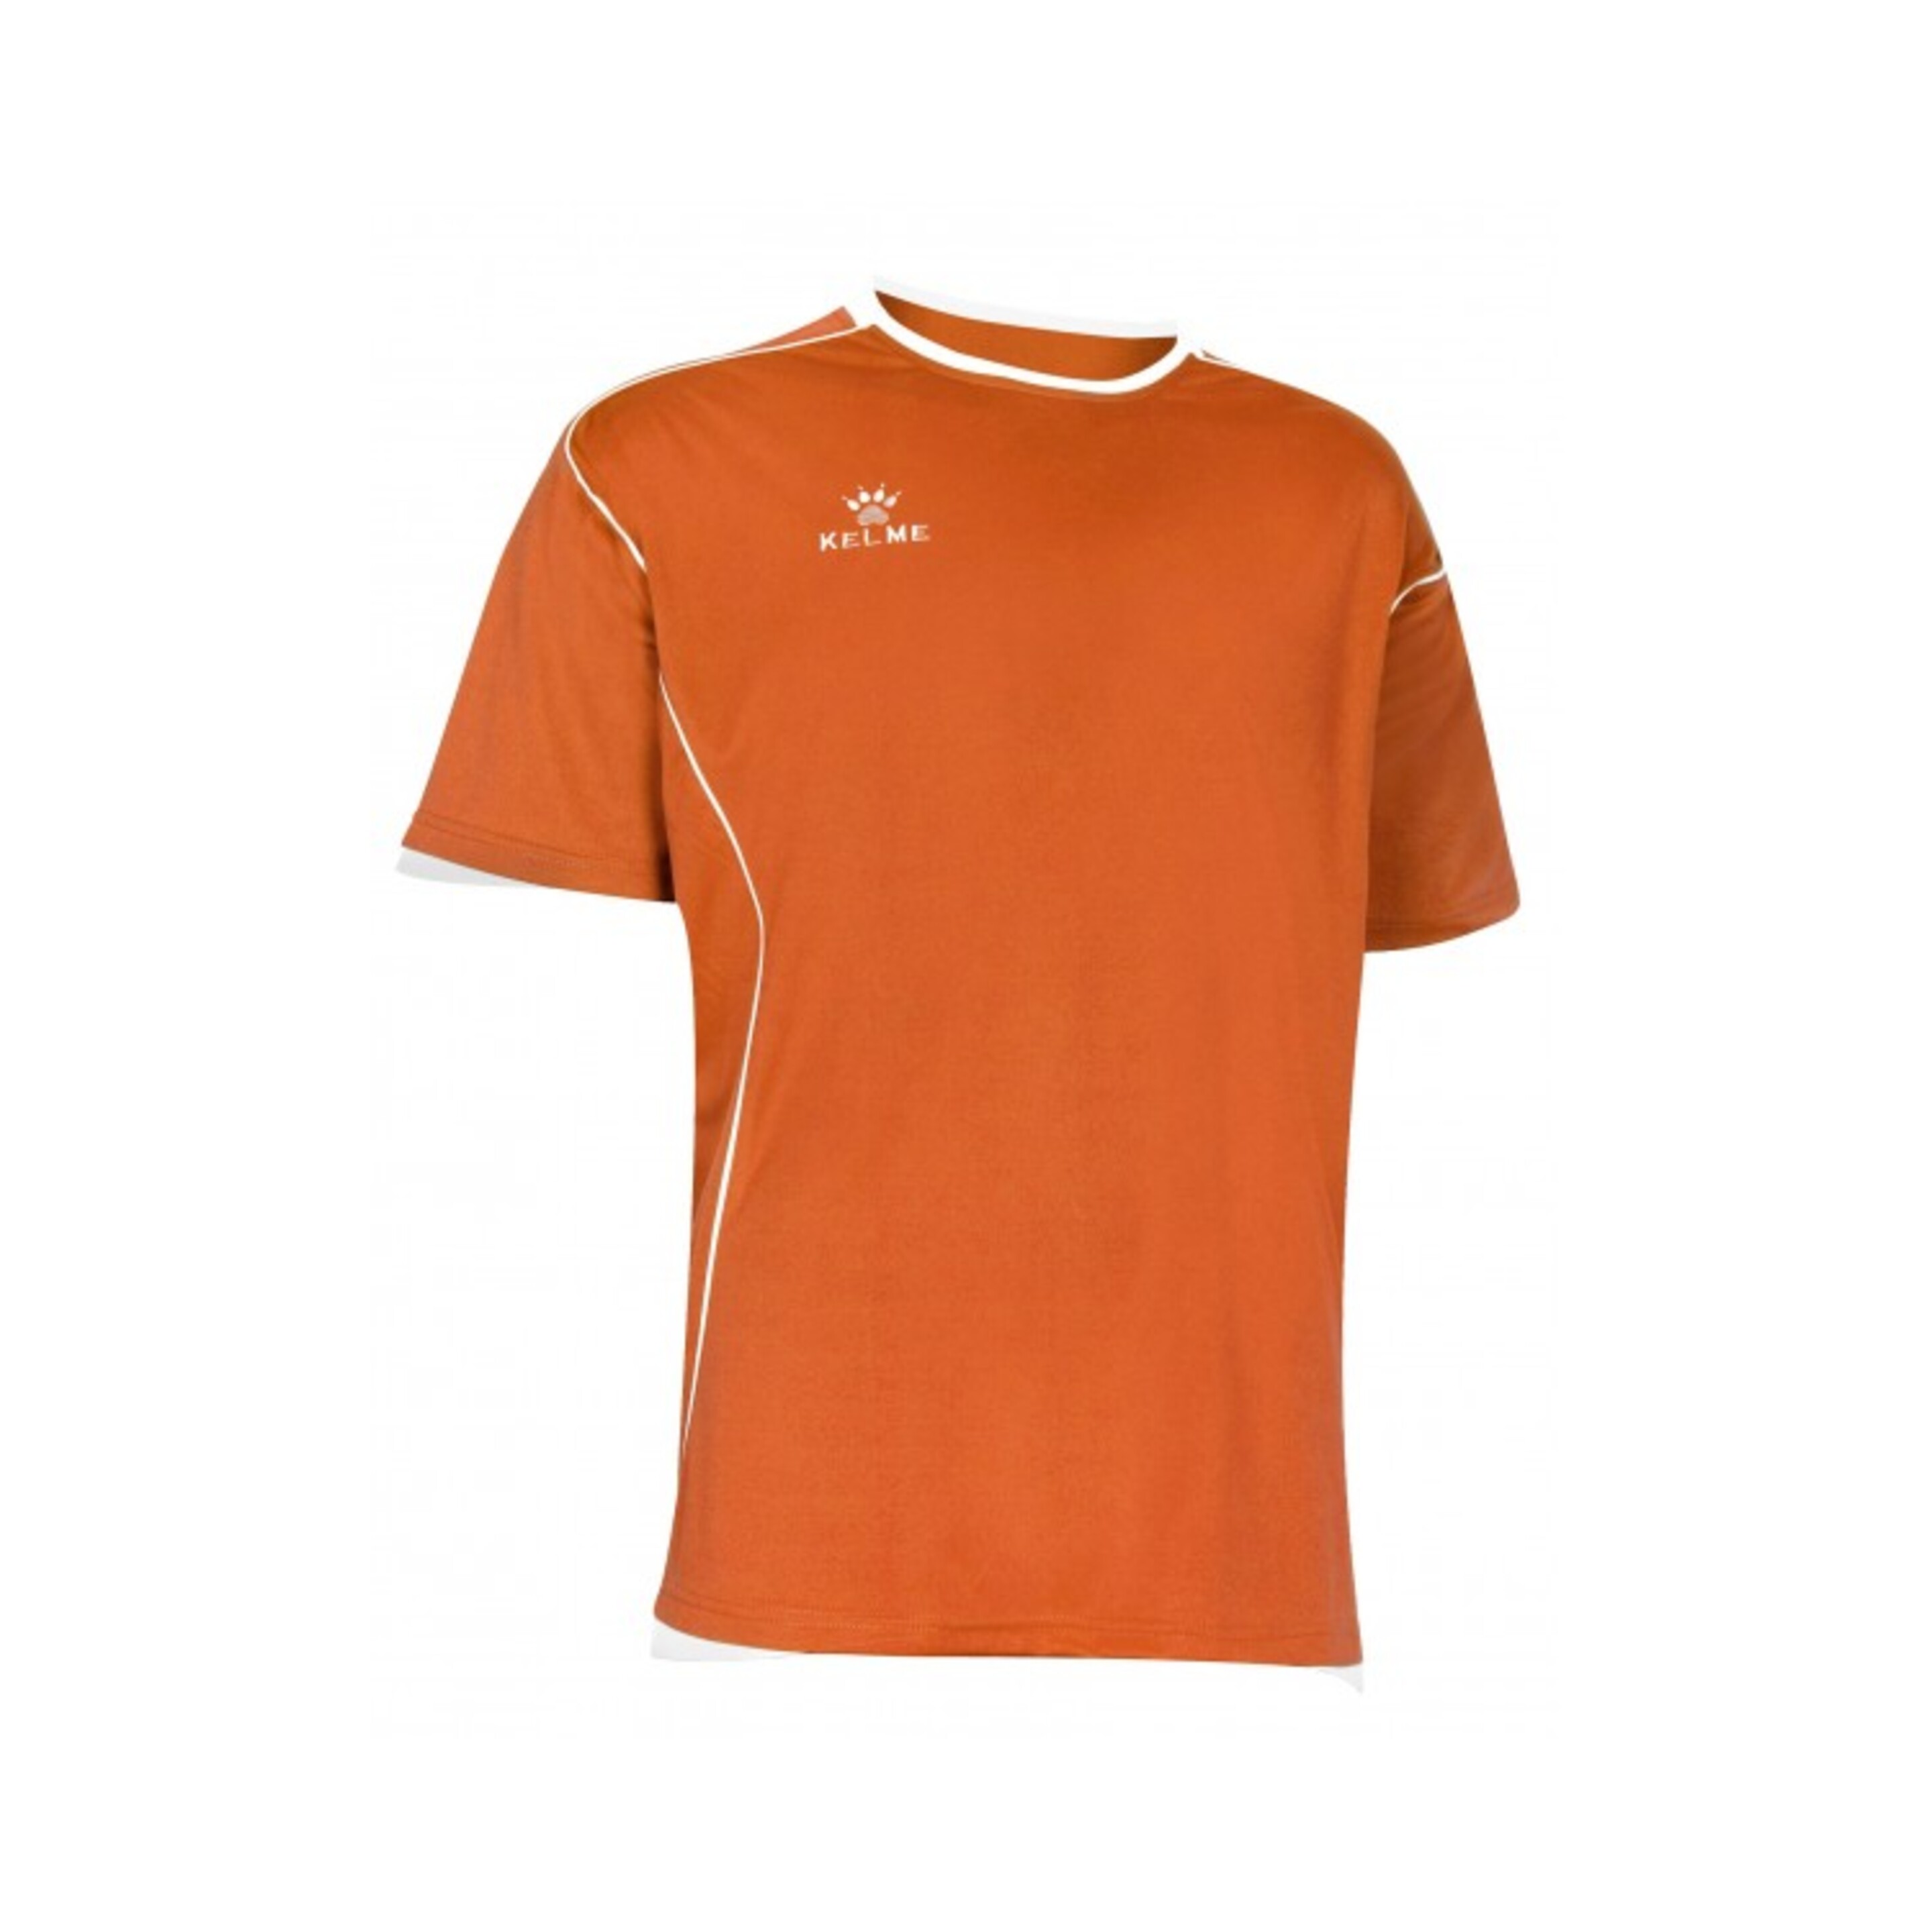 Camiseta Manga Corta Kelme Camiseta Mundial Naranja - naranja - 